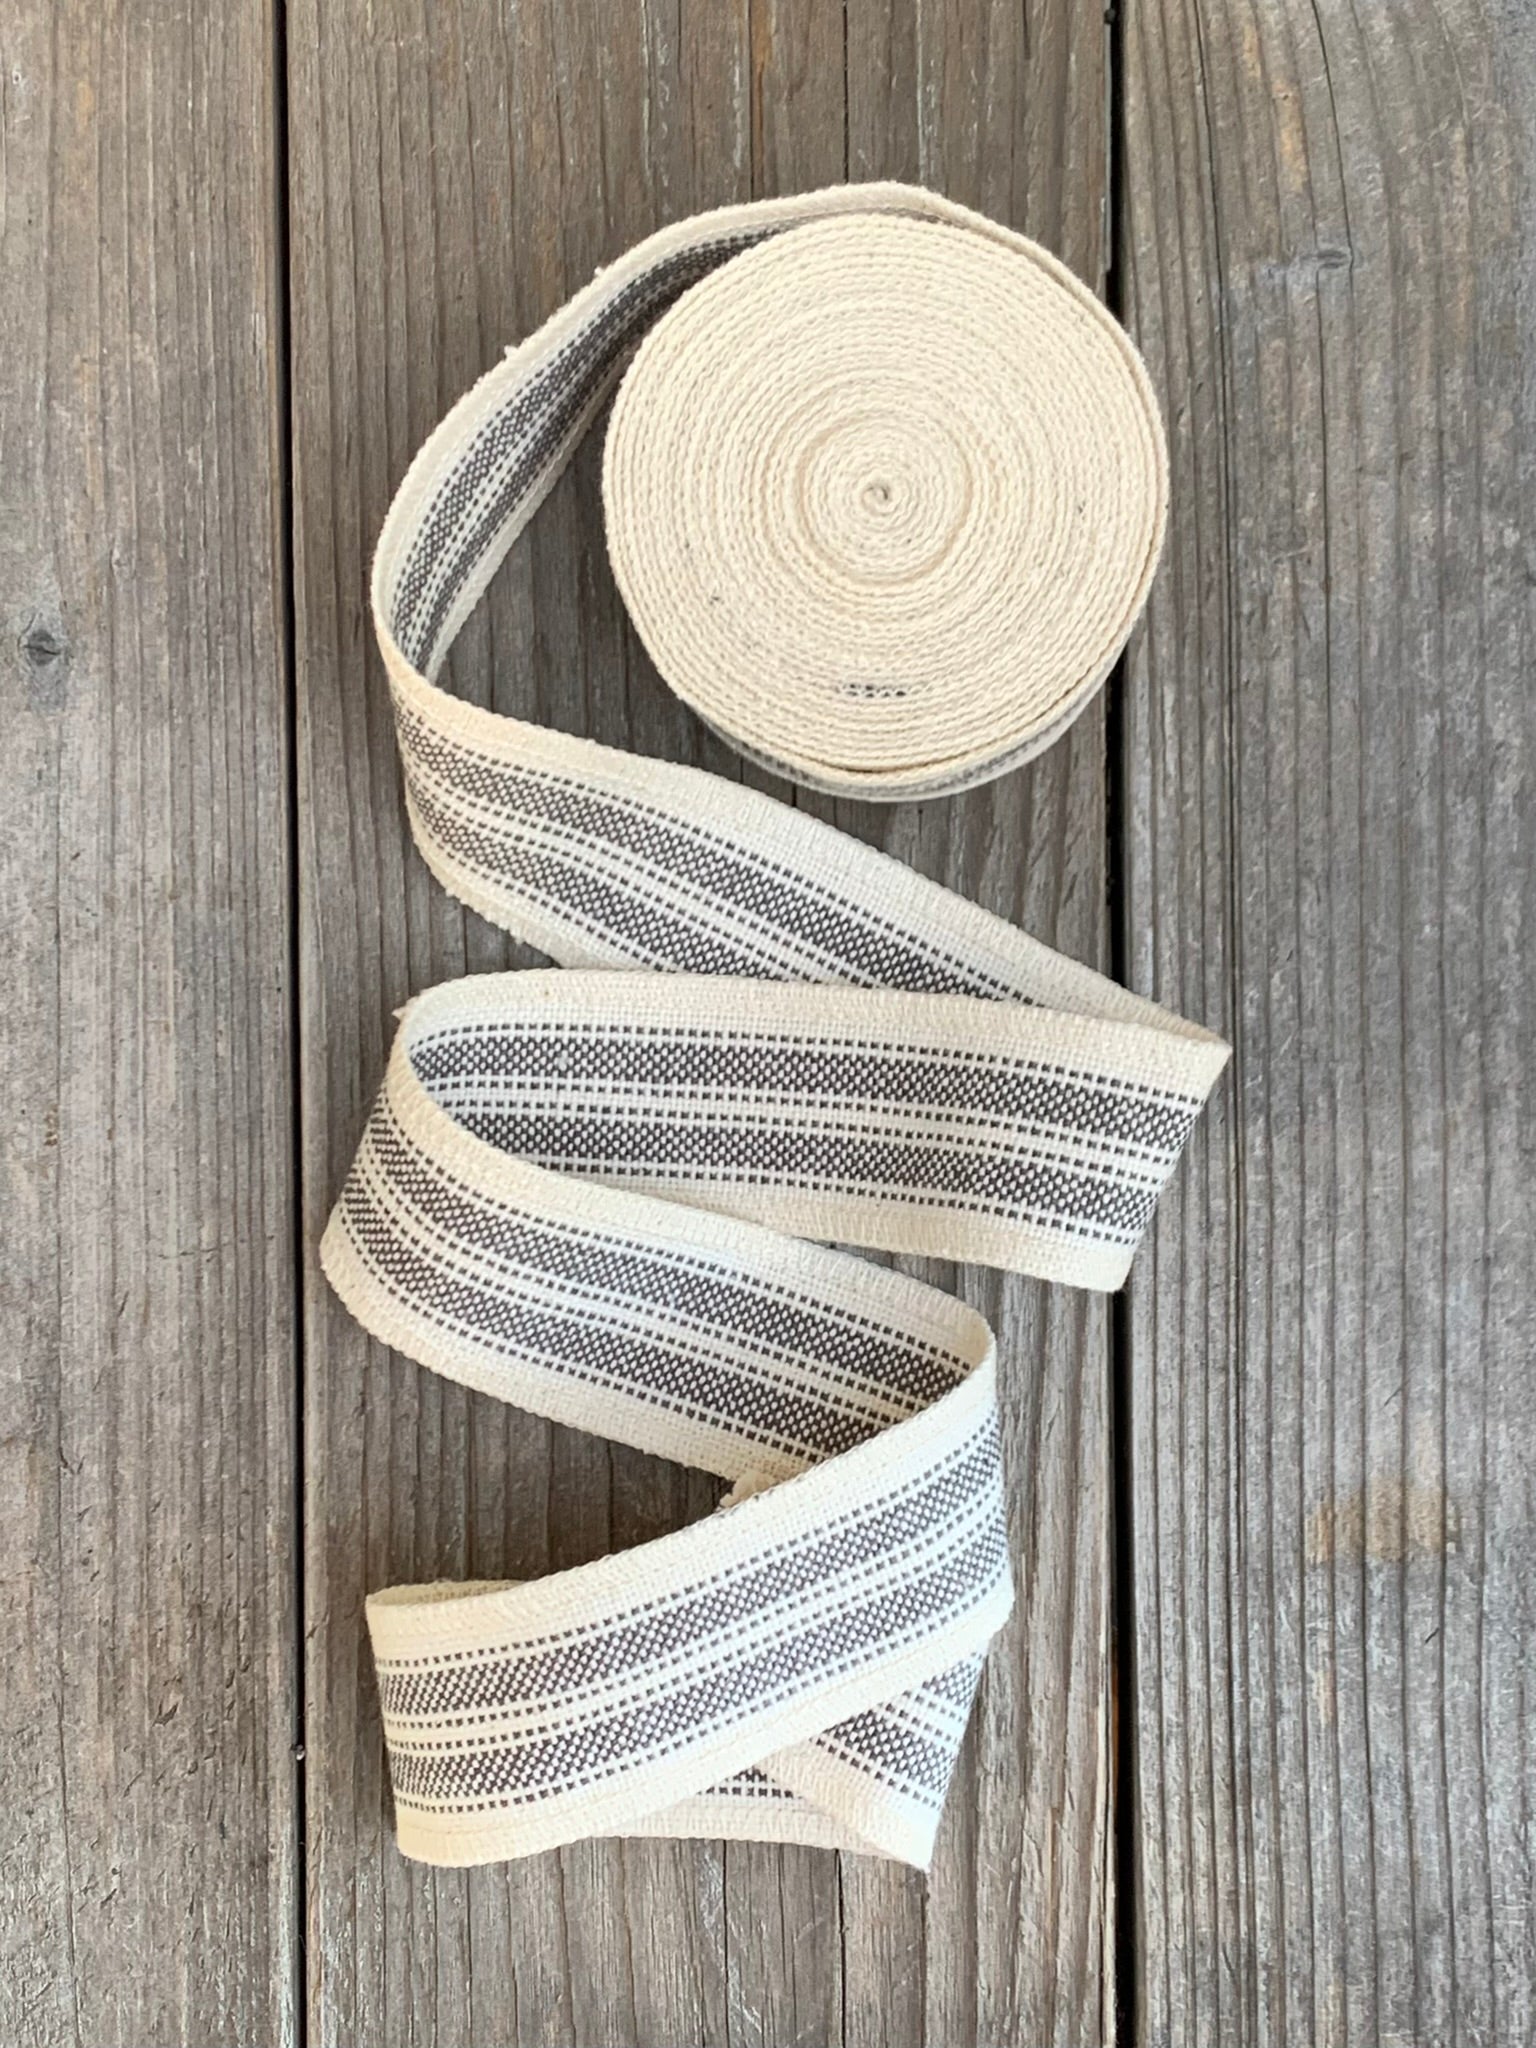 Grain Sack Ribbon - Gray and Cream Stripe - 1 3/4" Wide